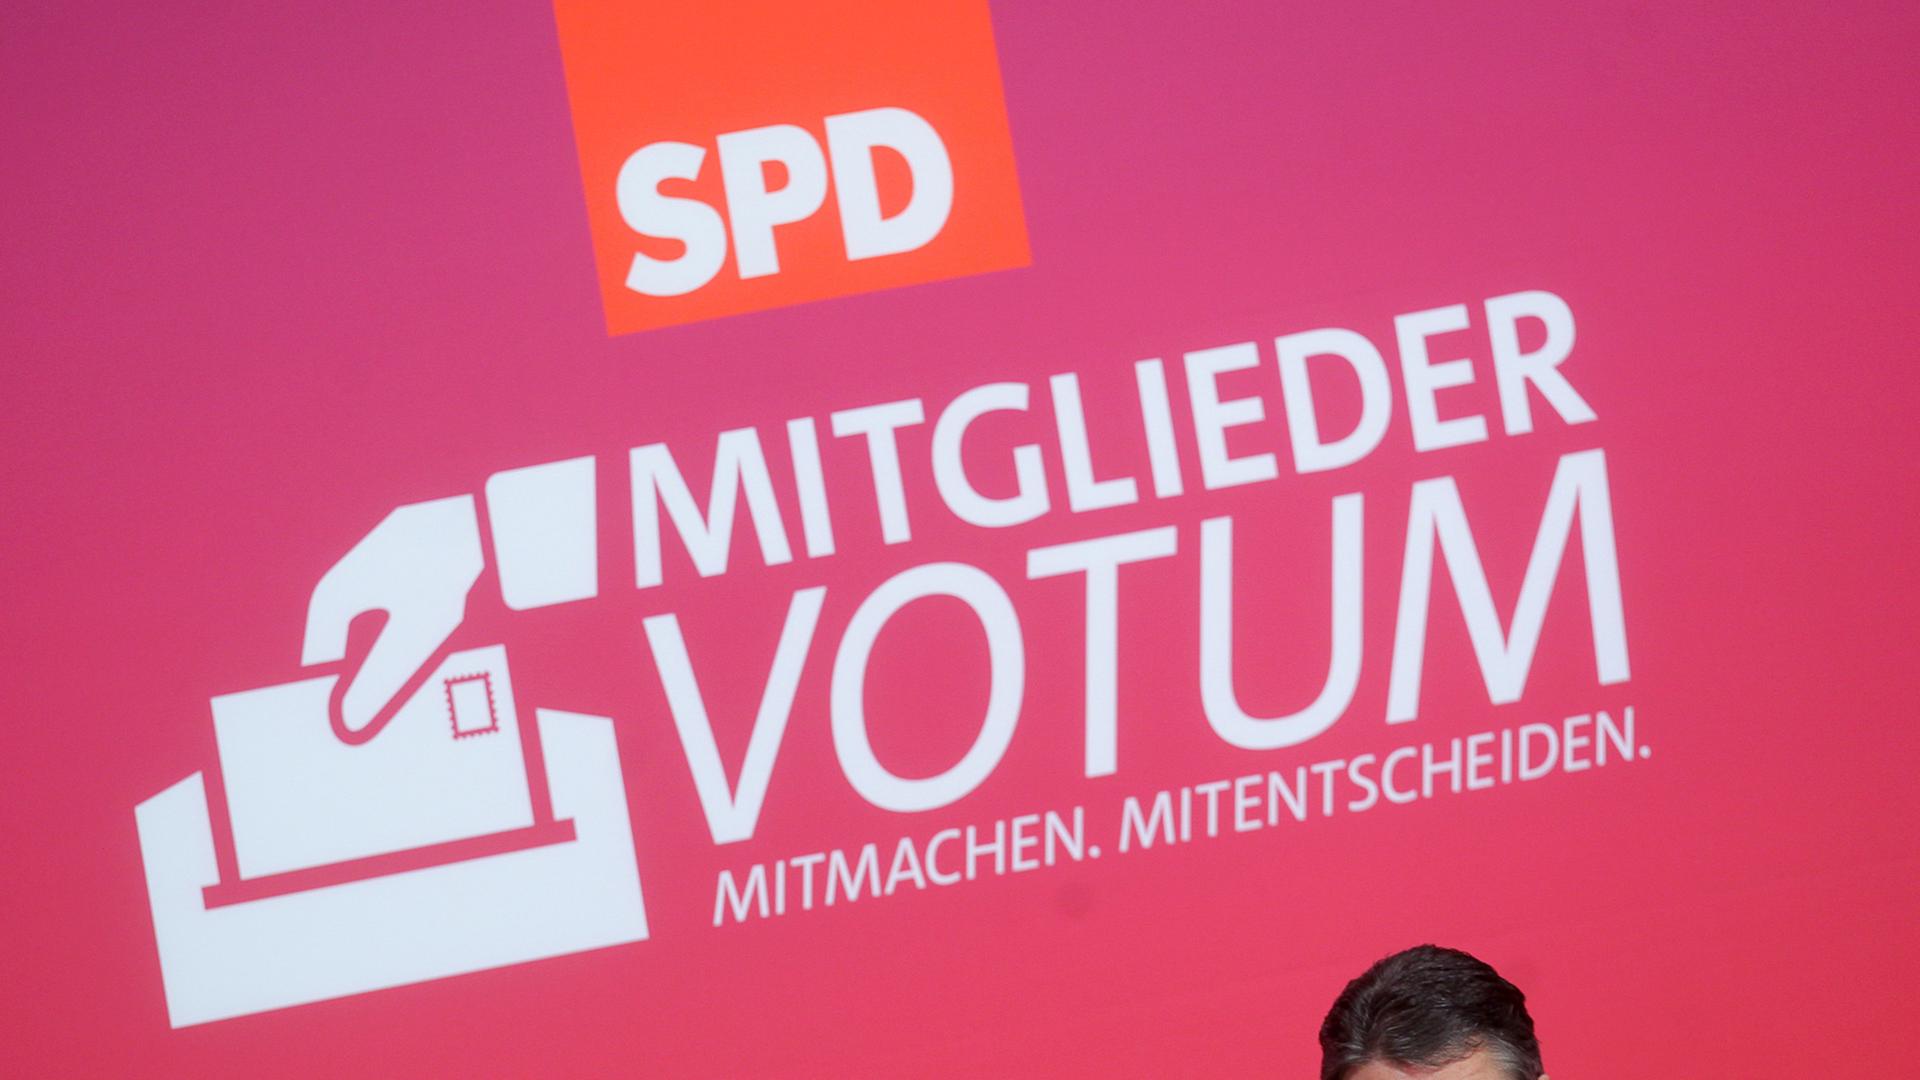 SPD-Chef Sigmar Gabriel steht vor einem SPD-PLakat mit dem Schriftzug "Mitgliedervotum - Mitmachen. Mitentscheiden"